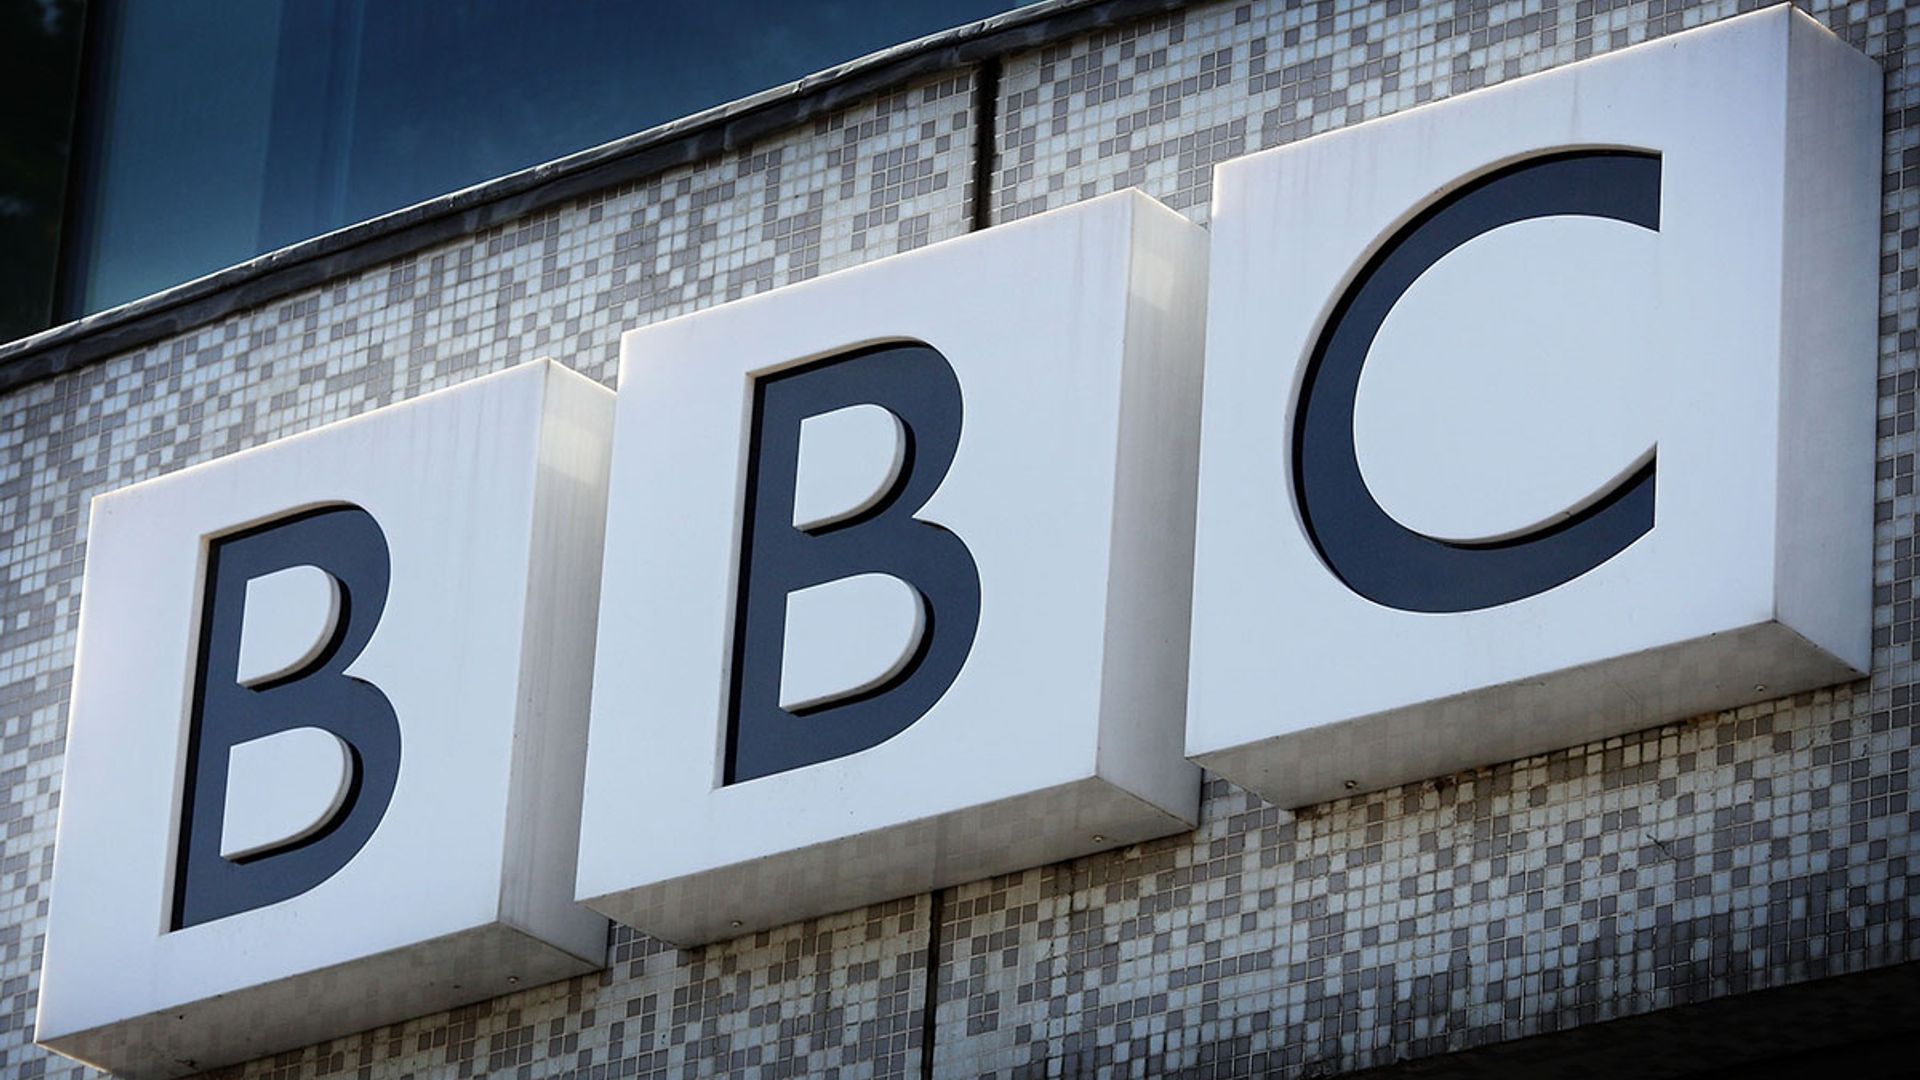 bbc sign